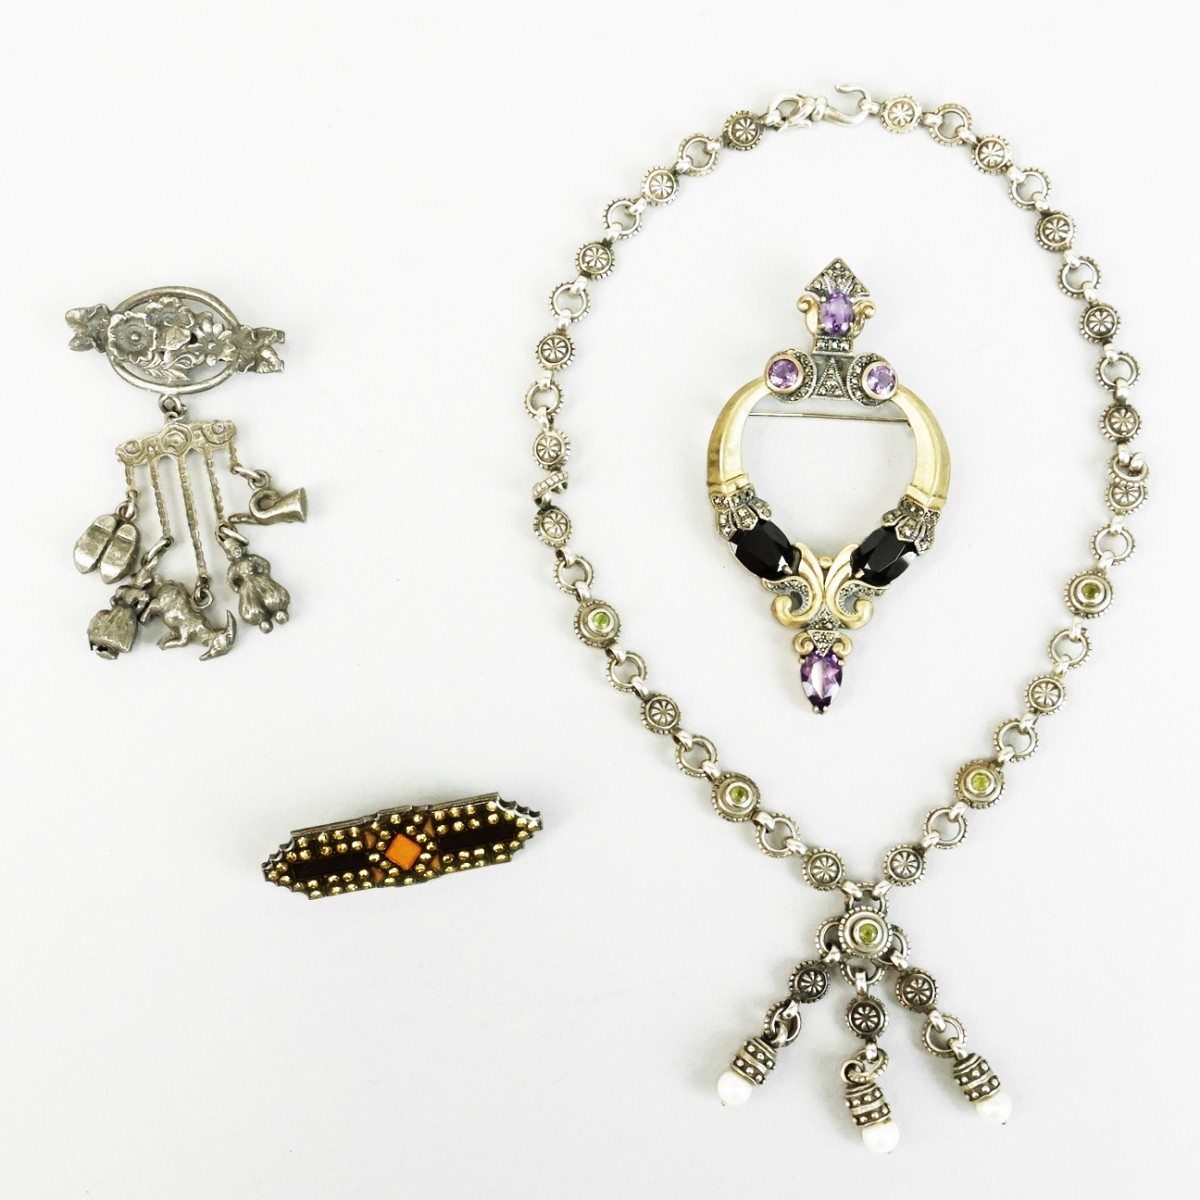 Jewelry Items